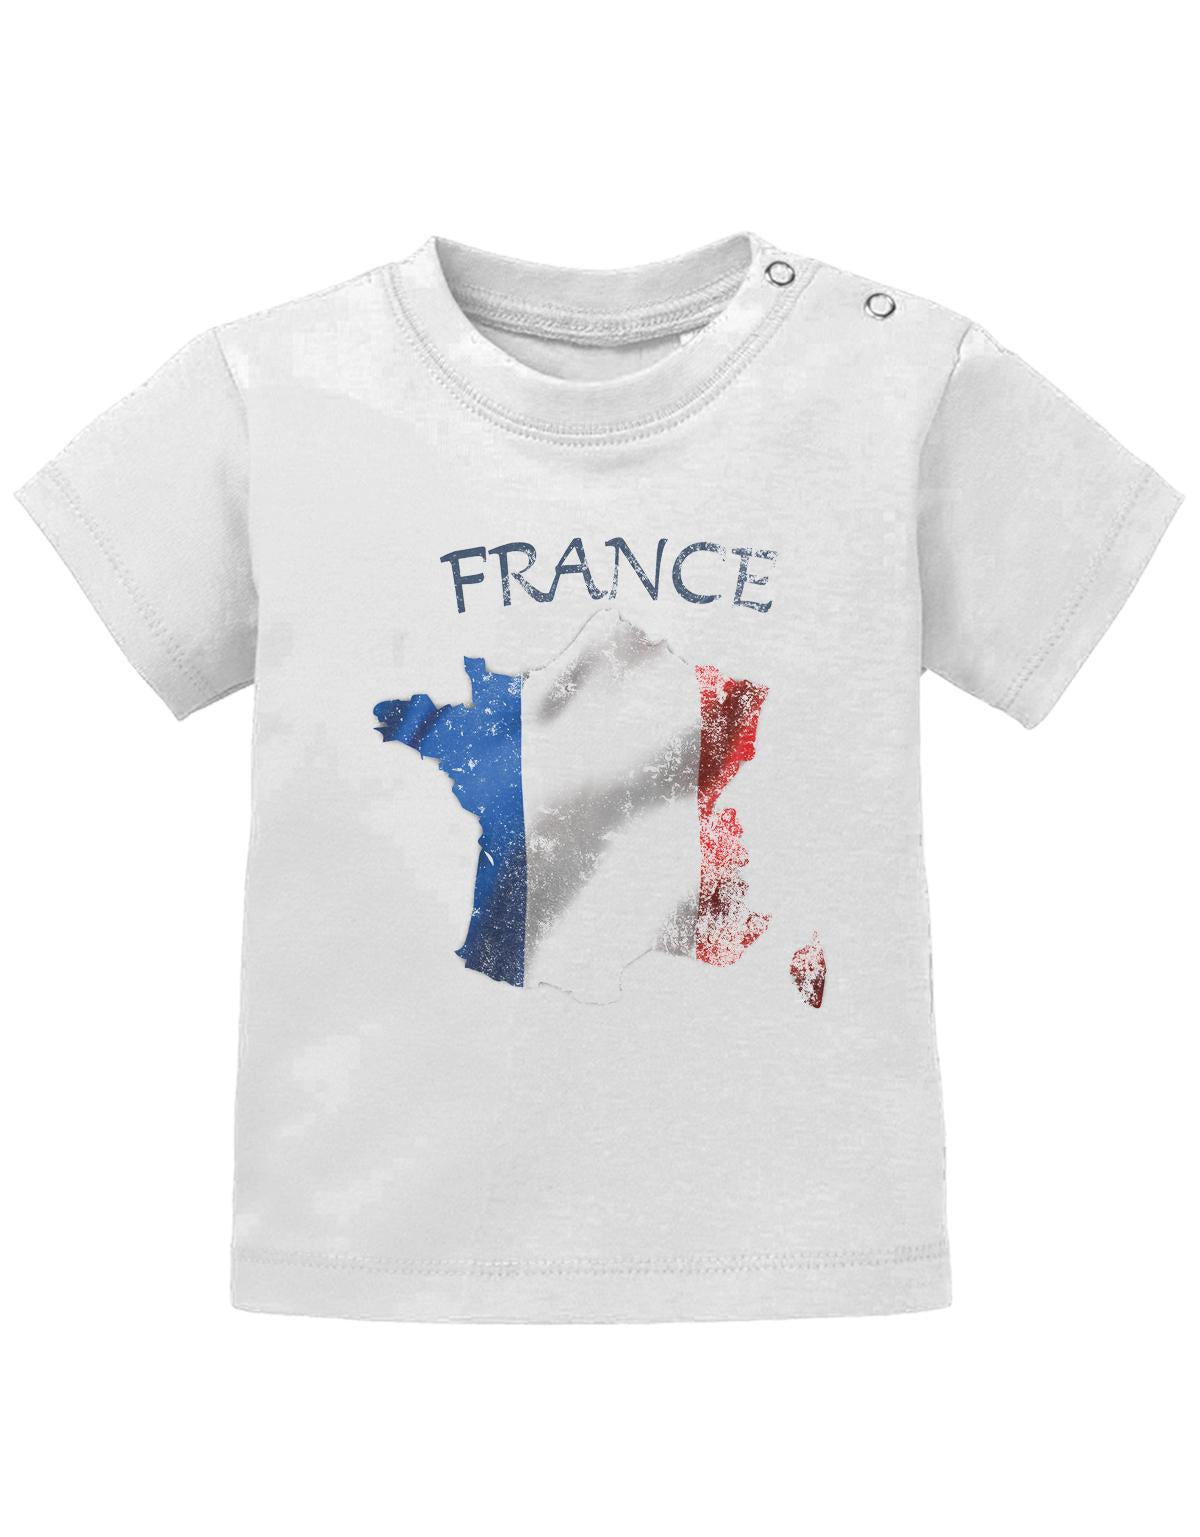 Frankreich T Shirt für Junge und Mädchen. Frankreich Grundriss Landkarte mit Flagge und France als Schriftzug im Grunge Design.